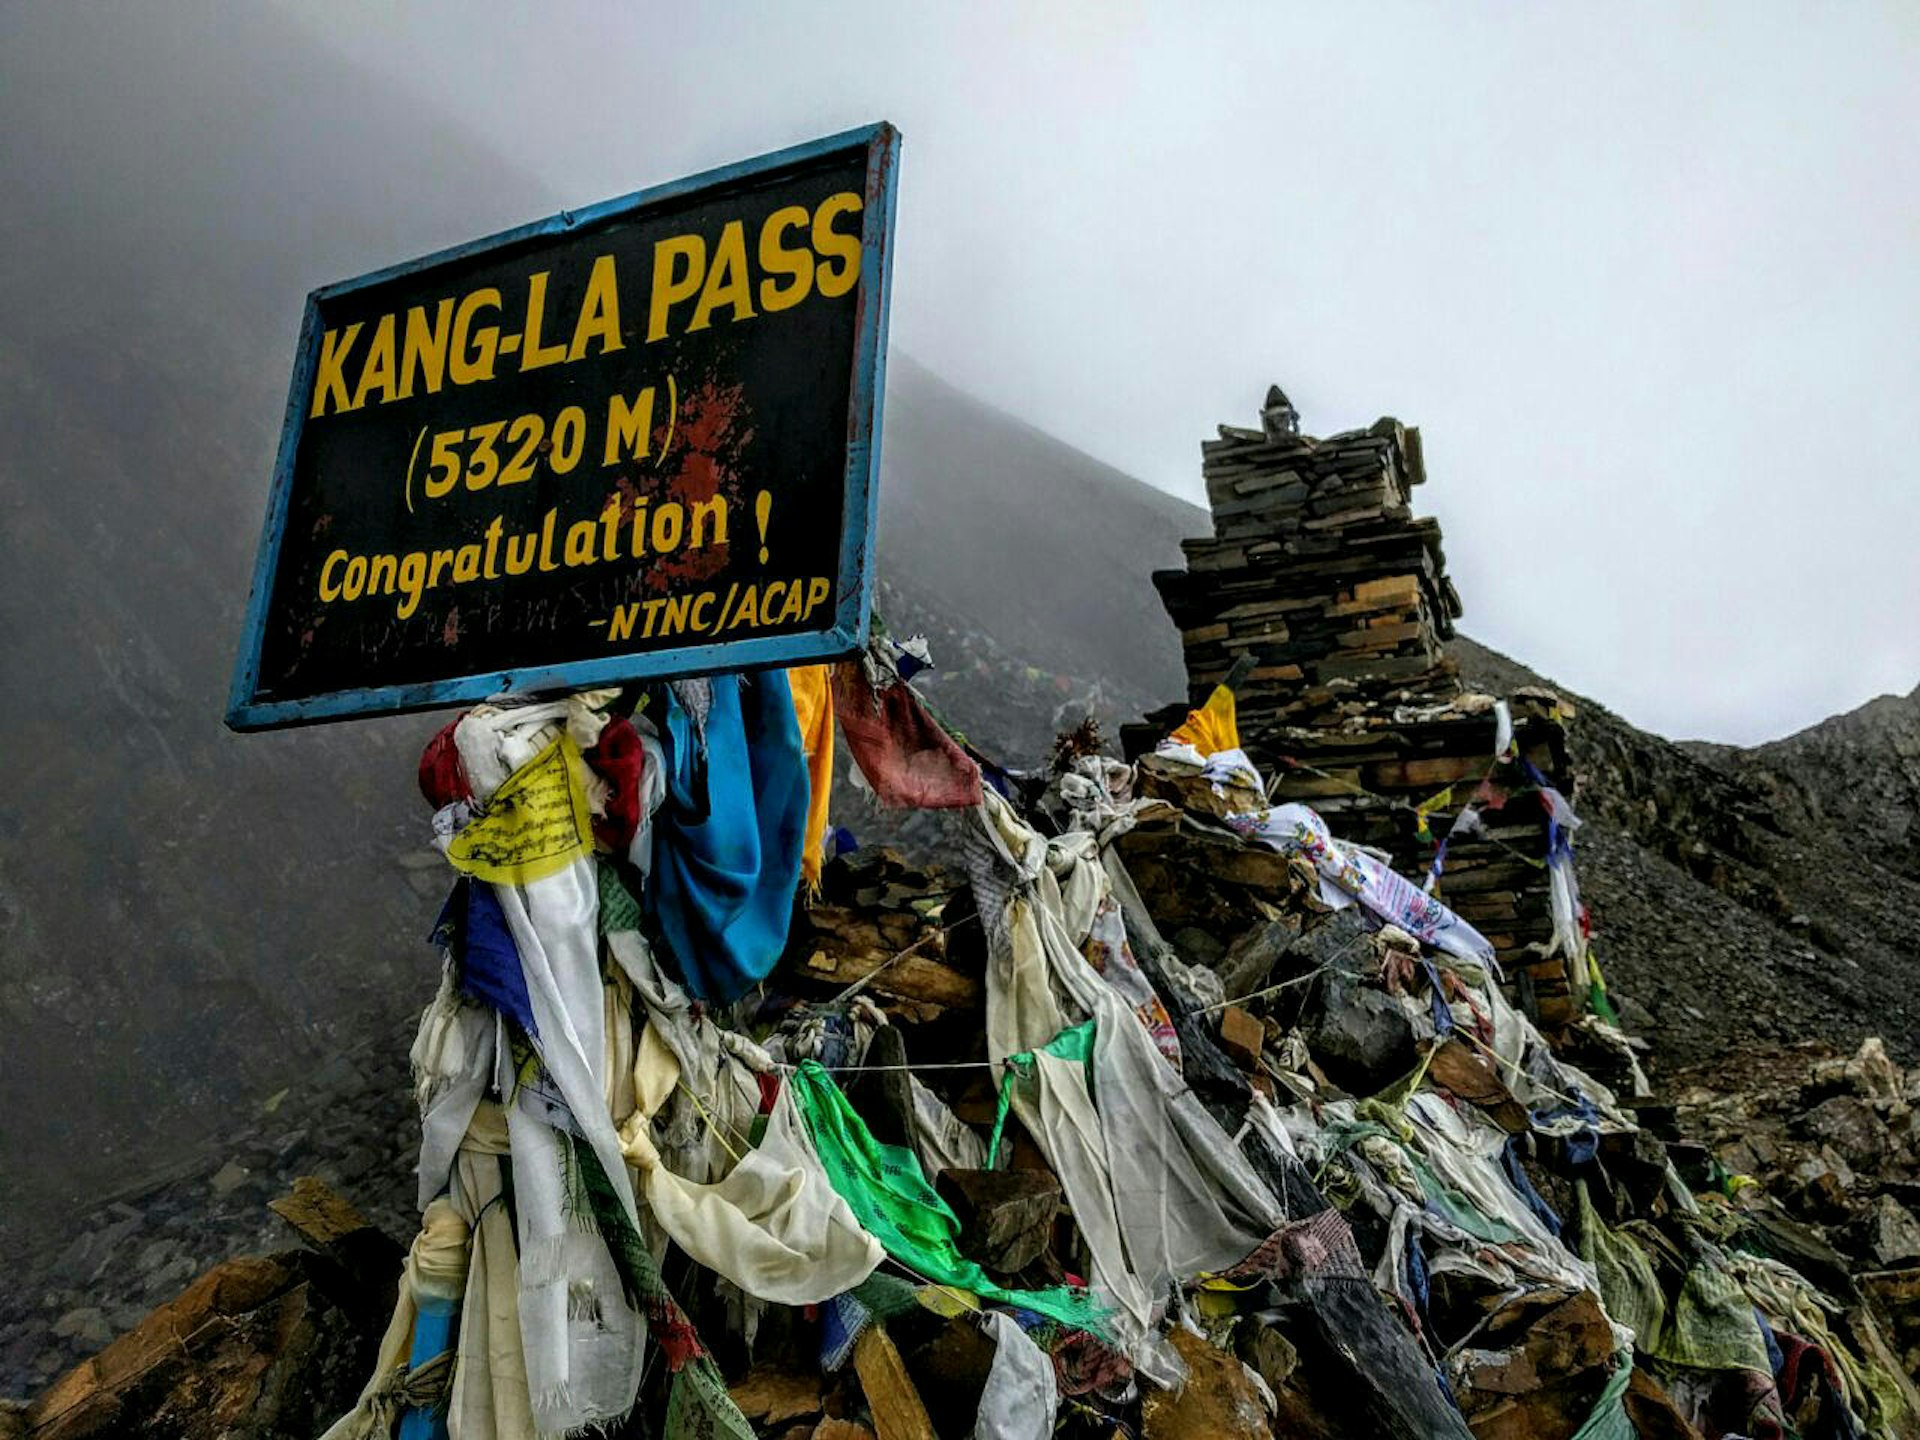 Prayer flags at Kang La pass